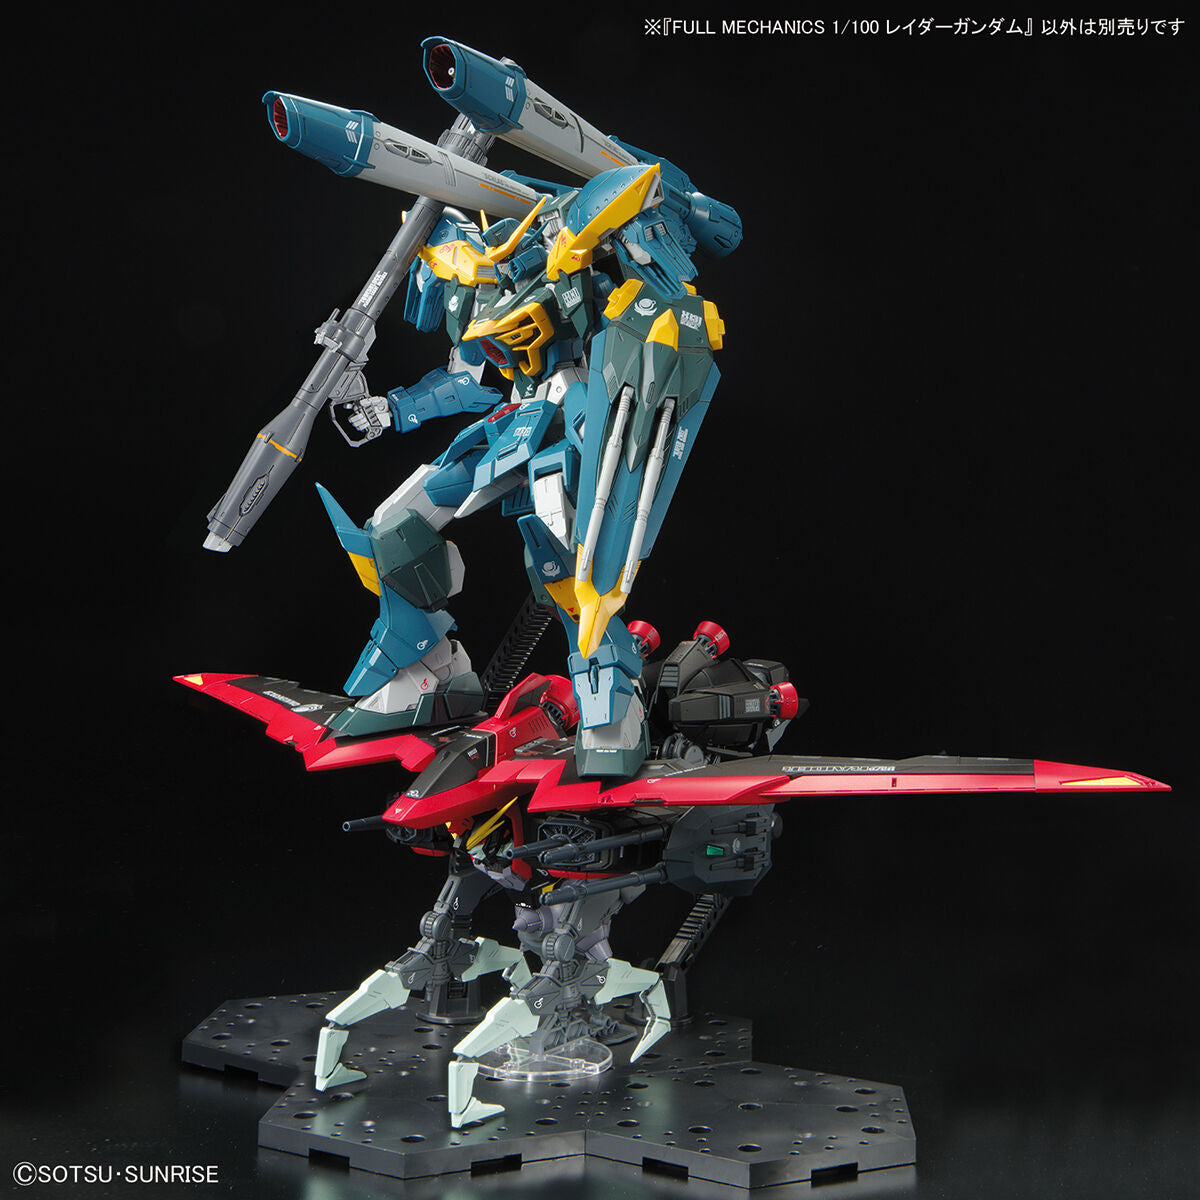 Full Mechanics GATX-370 Raider Gundam 1/100